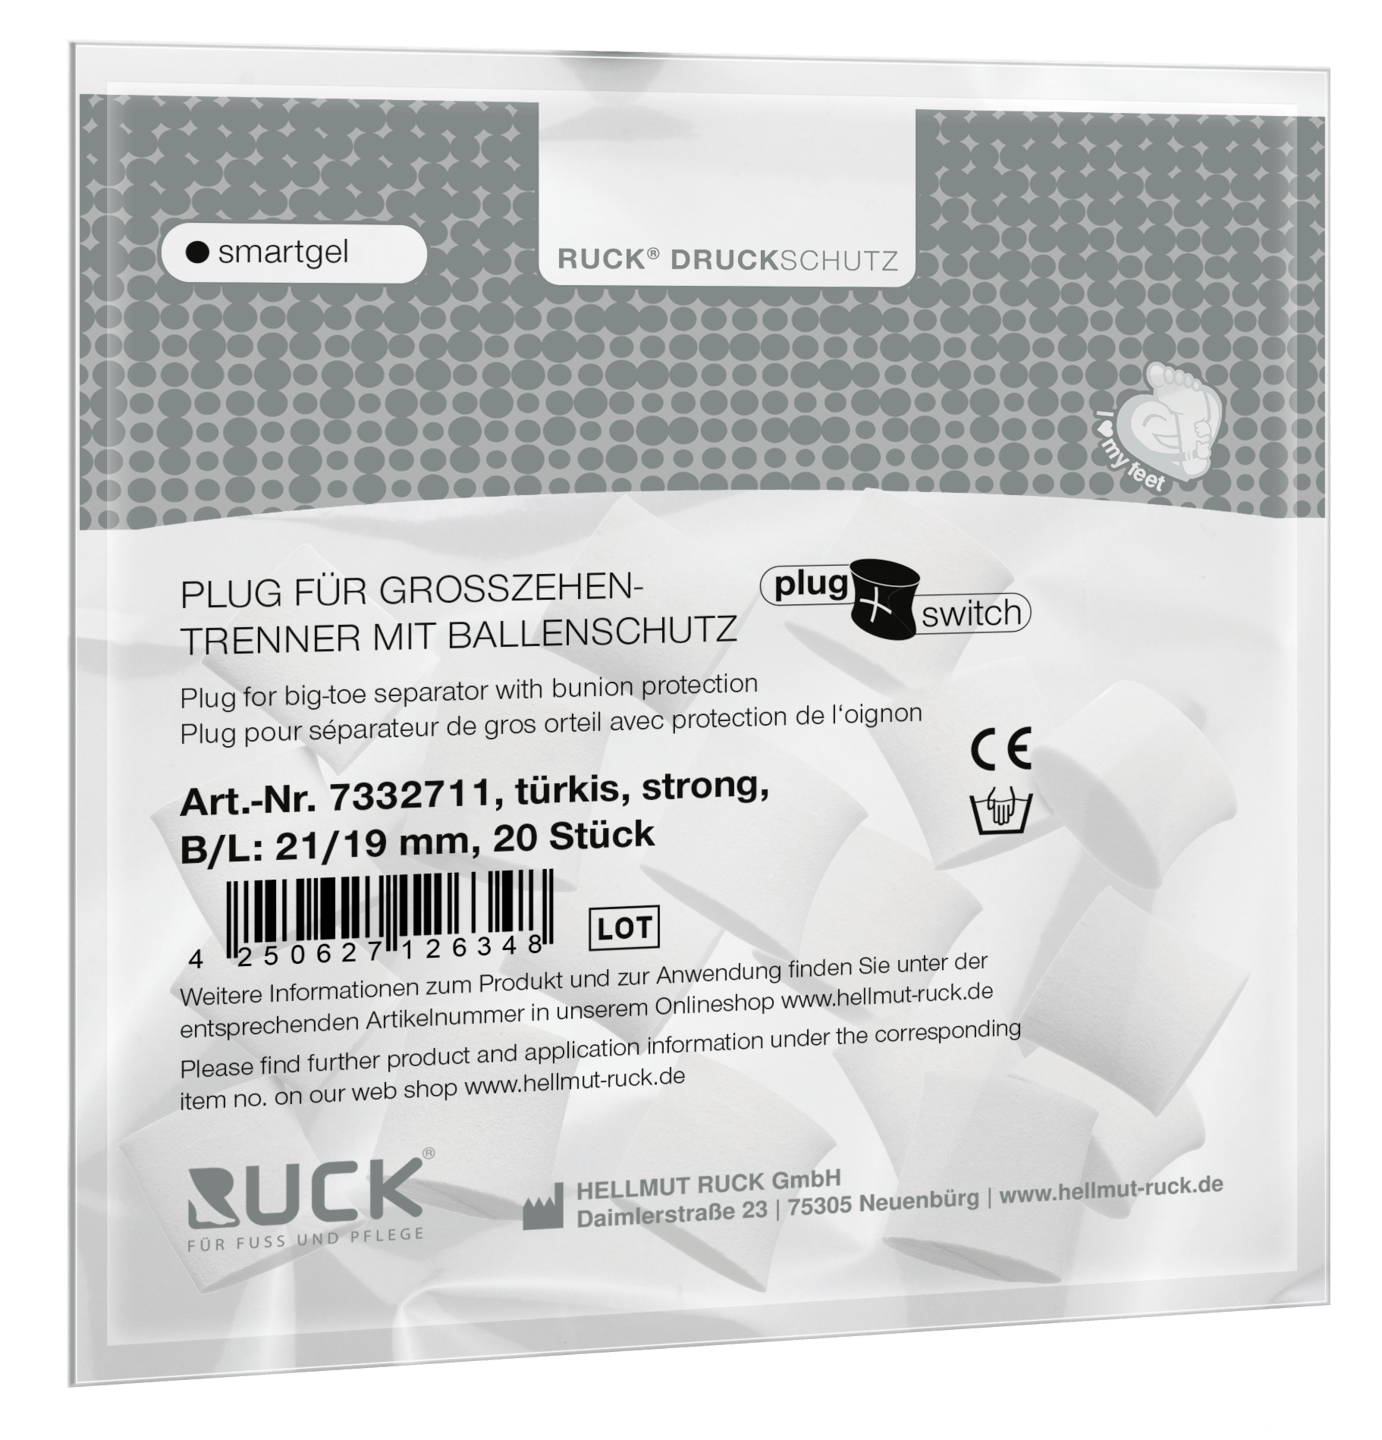 RUCK DRUCKSCHUTZ - Plugs für RUCK® DRUCKSCHUTZ smartgel plug+switch Großzehentrenner mit Ballenschutz in türkis